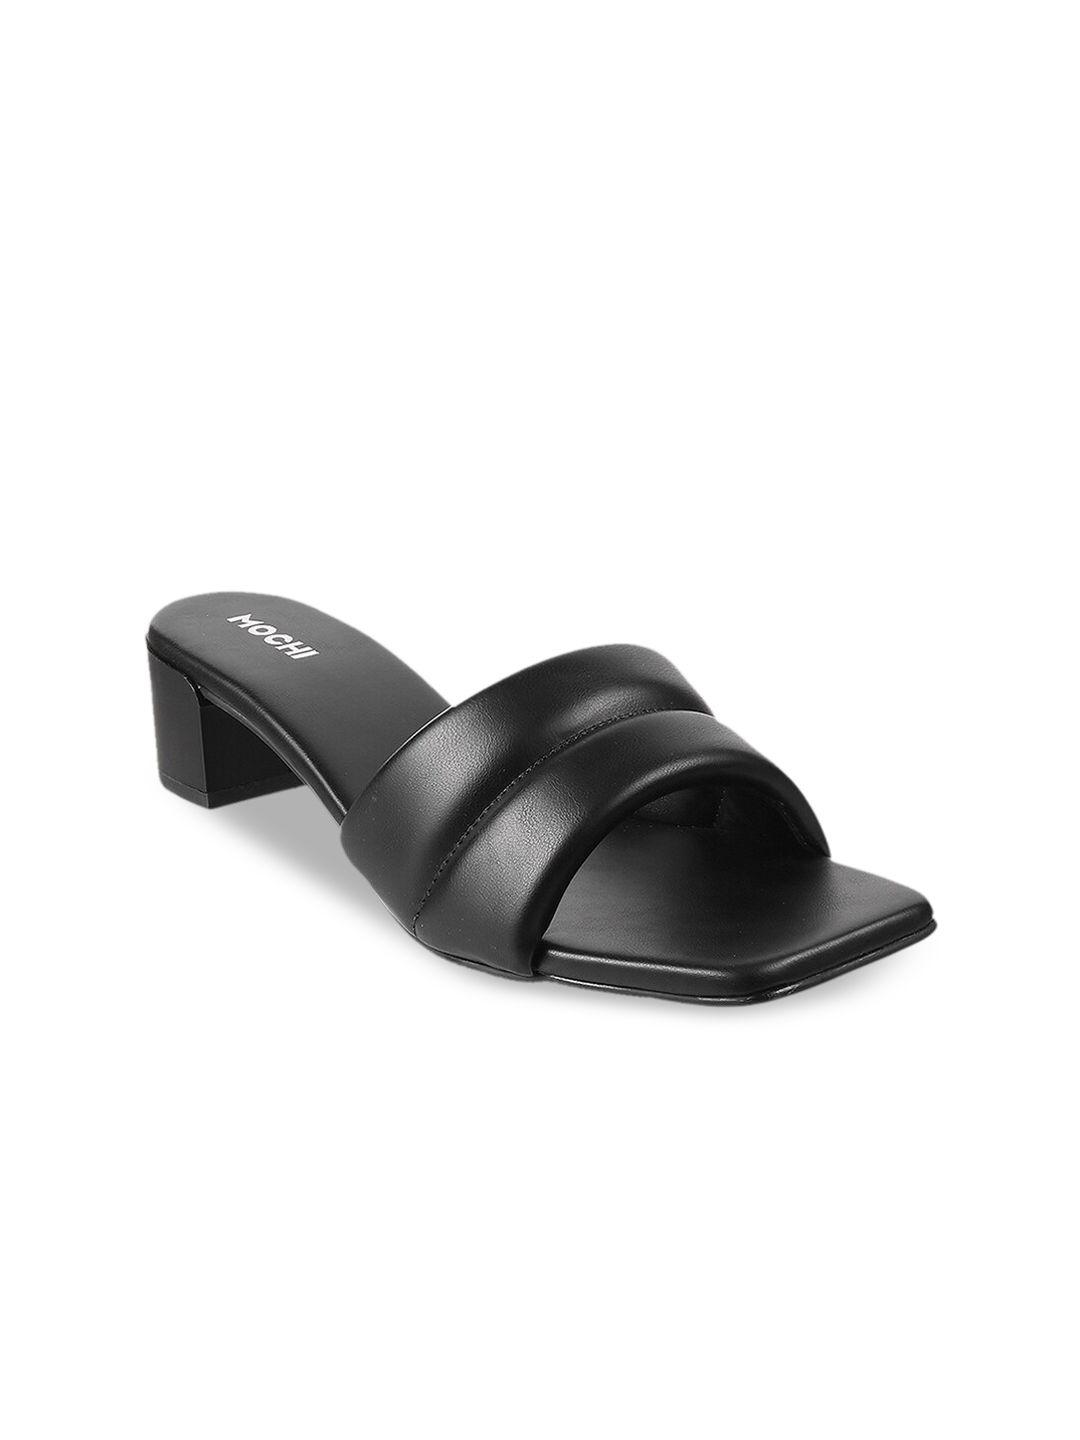 mochi women black block heels